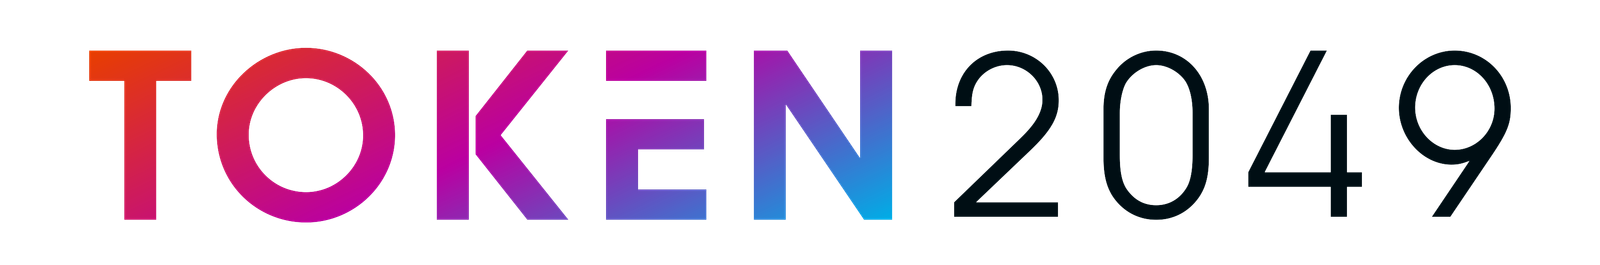 Token 2049 company logo.